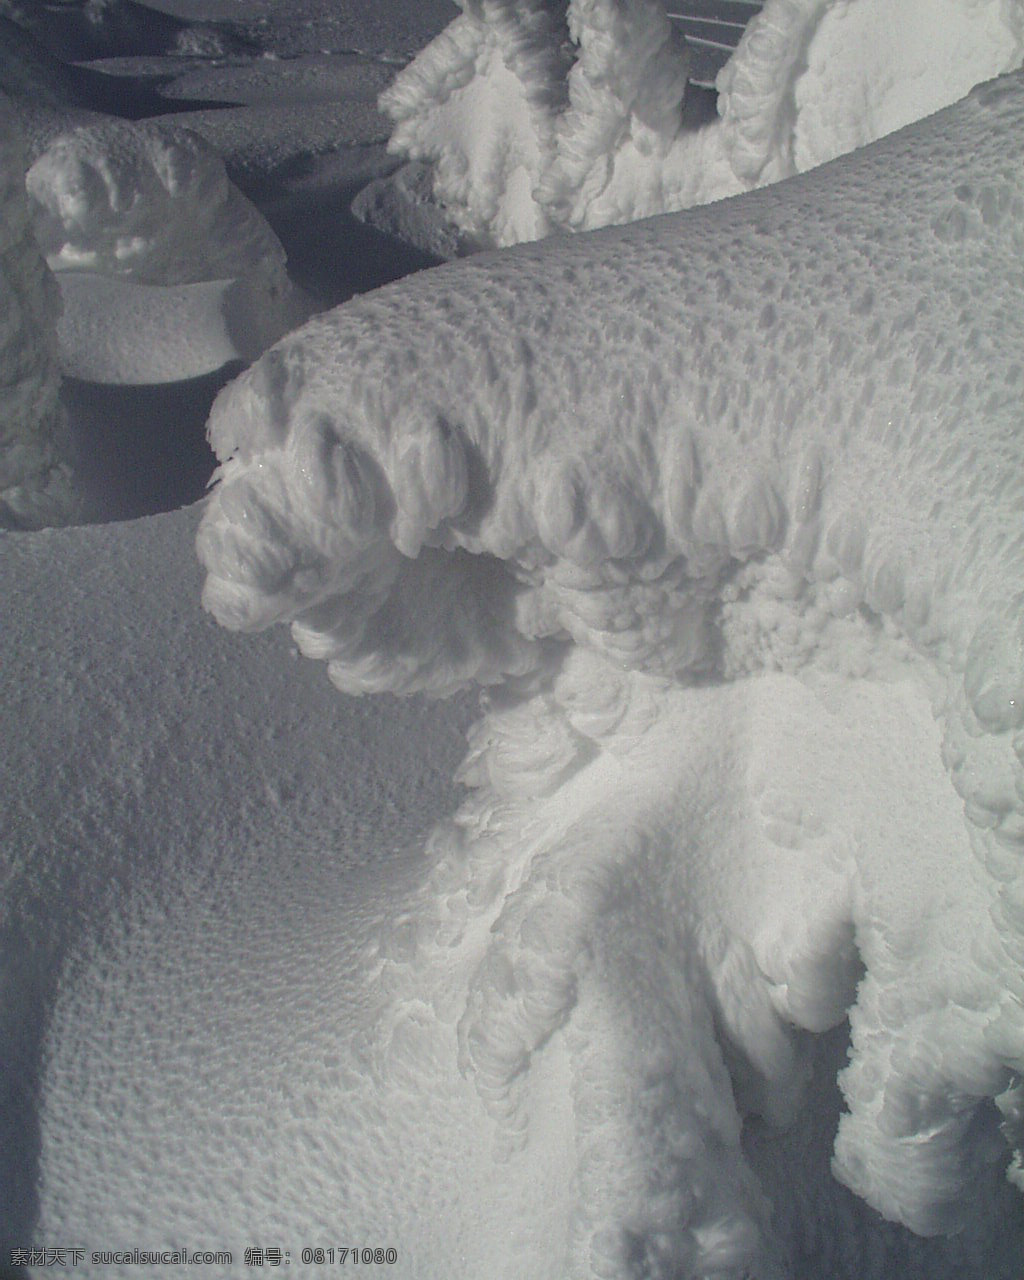 冰雪世界 自然风景 贴图素材 jpg0305 设计素材 自然风光 建筑装饰 灰色